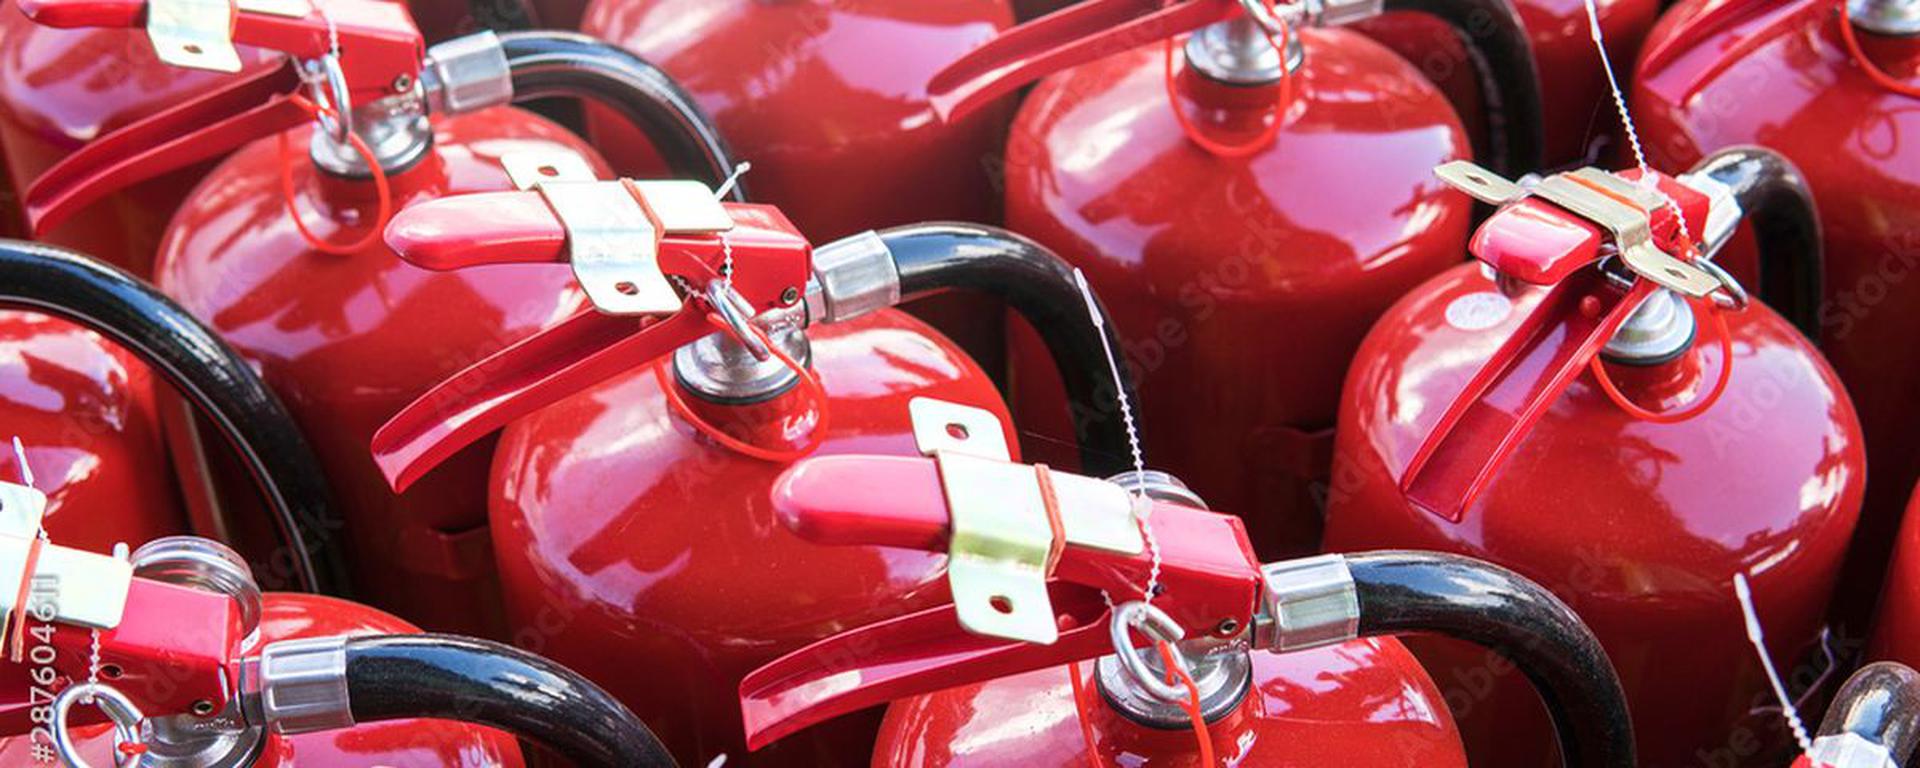 Ninguna autoridad se hace responsable de certificar la calidad de los extintores y ahora proliferan los ejemplares bamba | INFORME